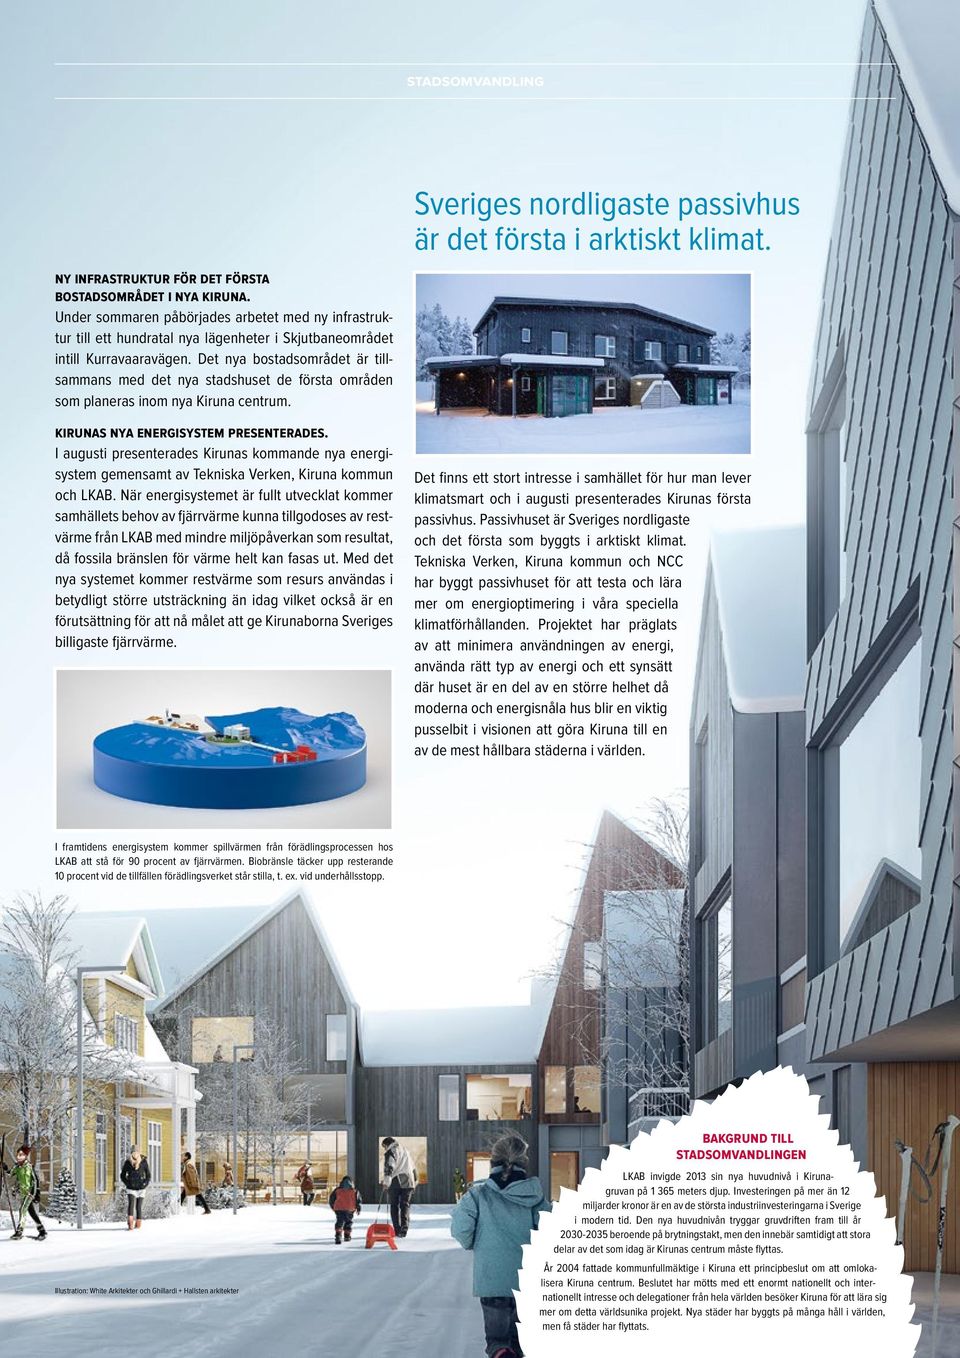 Det nya bostadsområdet är tillsammans med det nya stadshuset de första områden som planeras inom nya Kiruna centrum. kirunas nya energisystem presenterades.